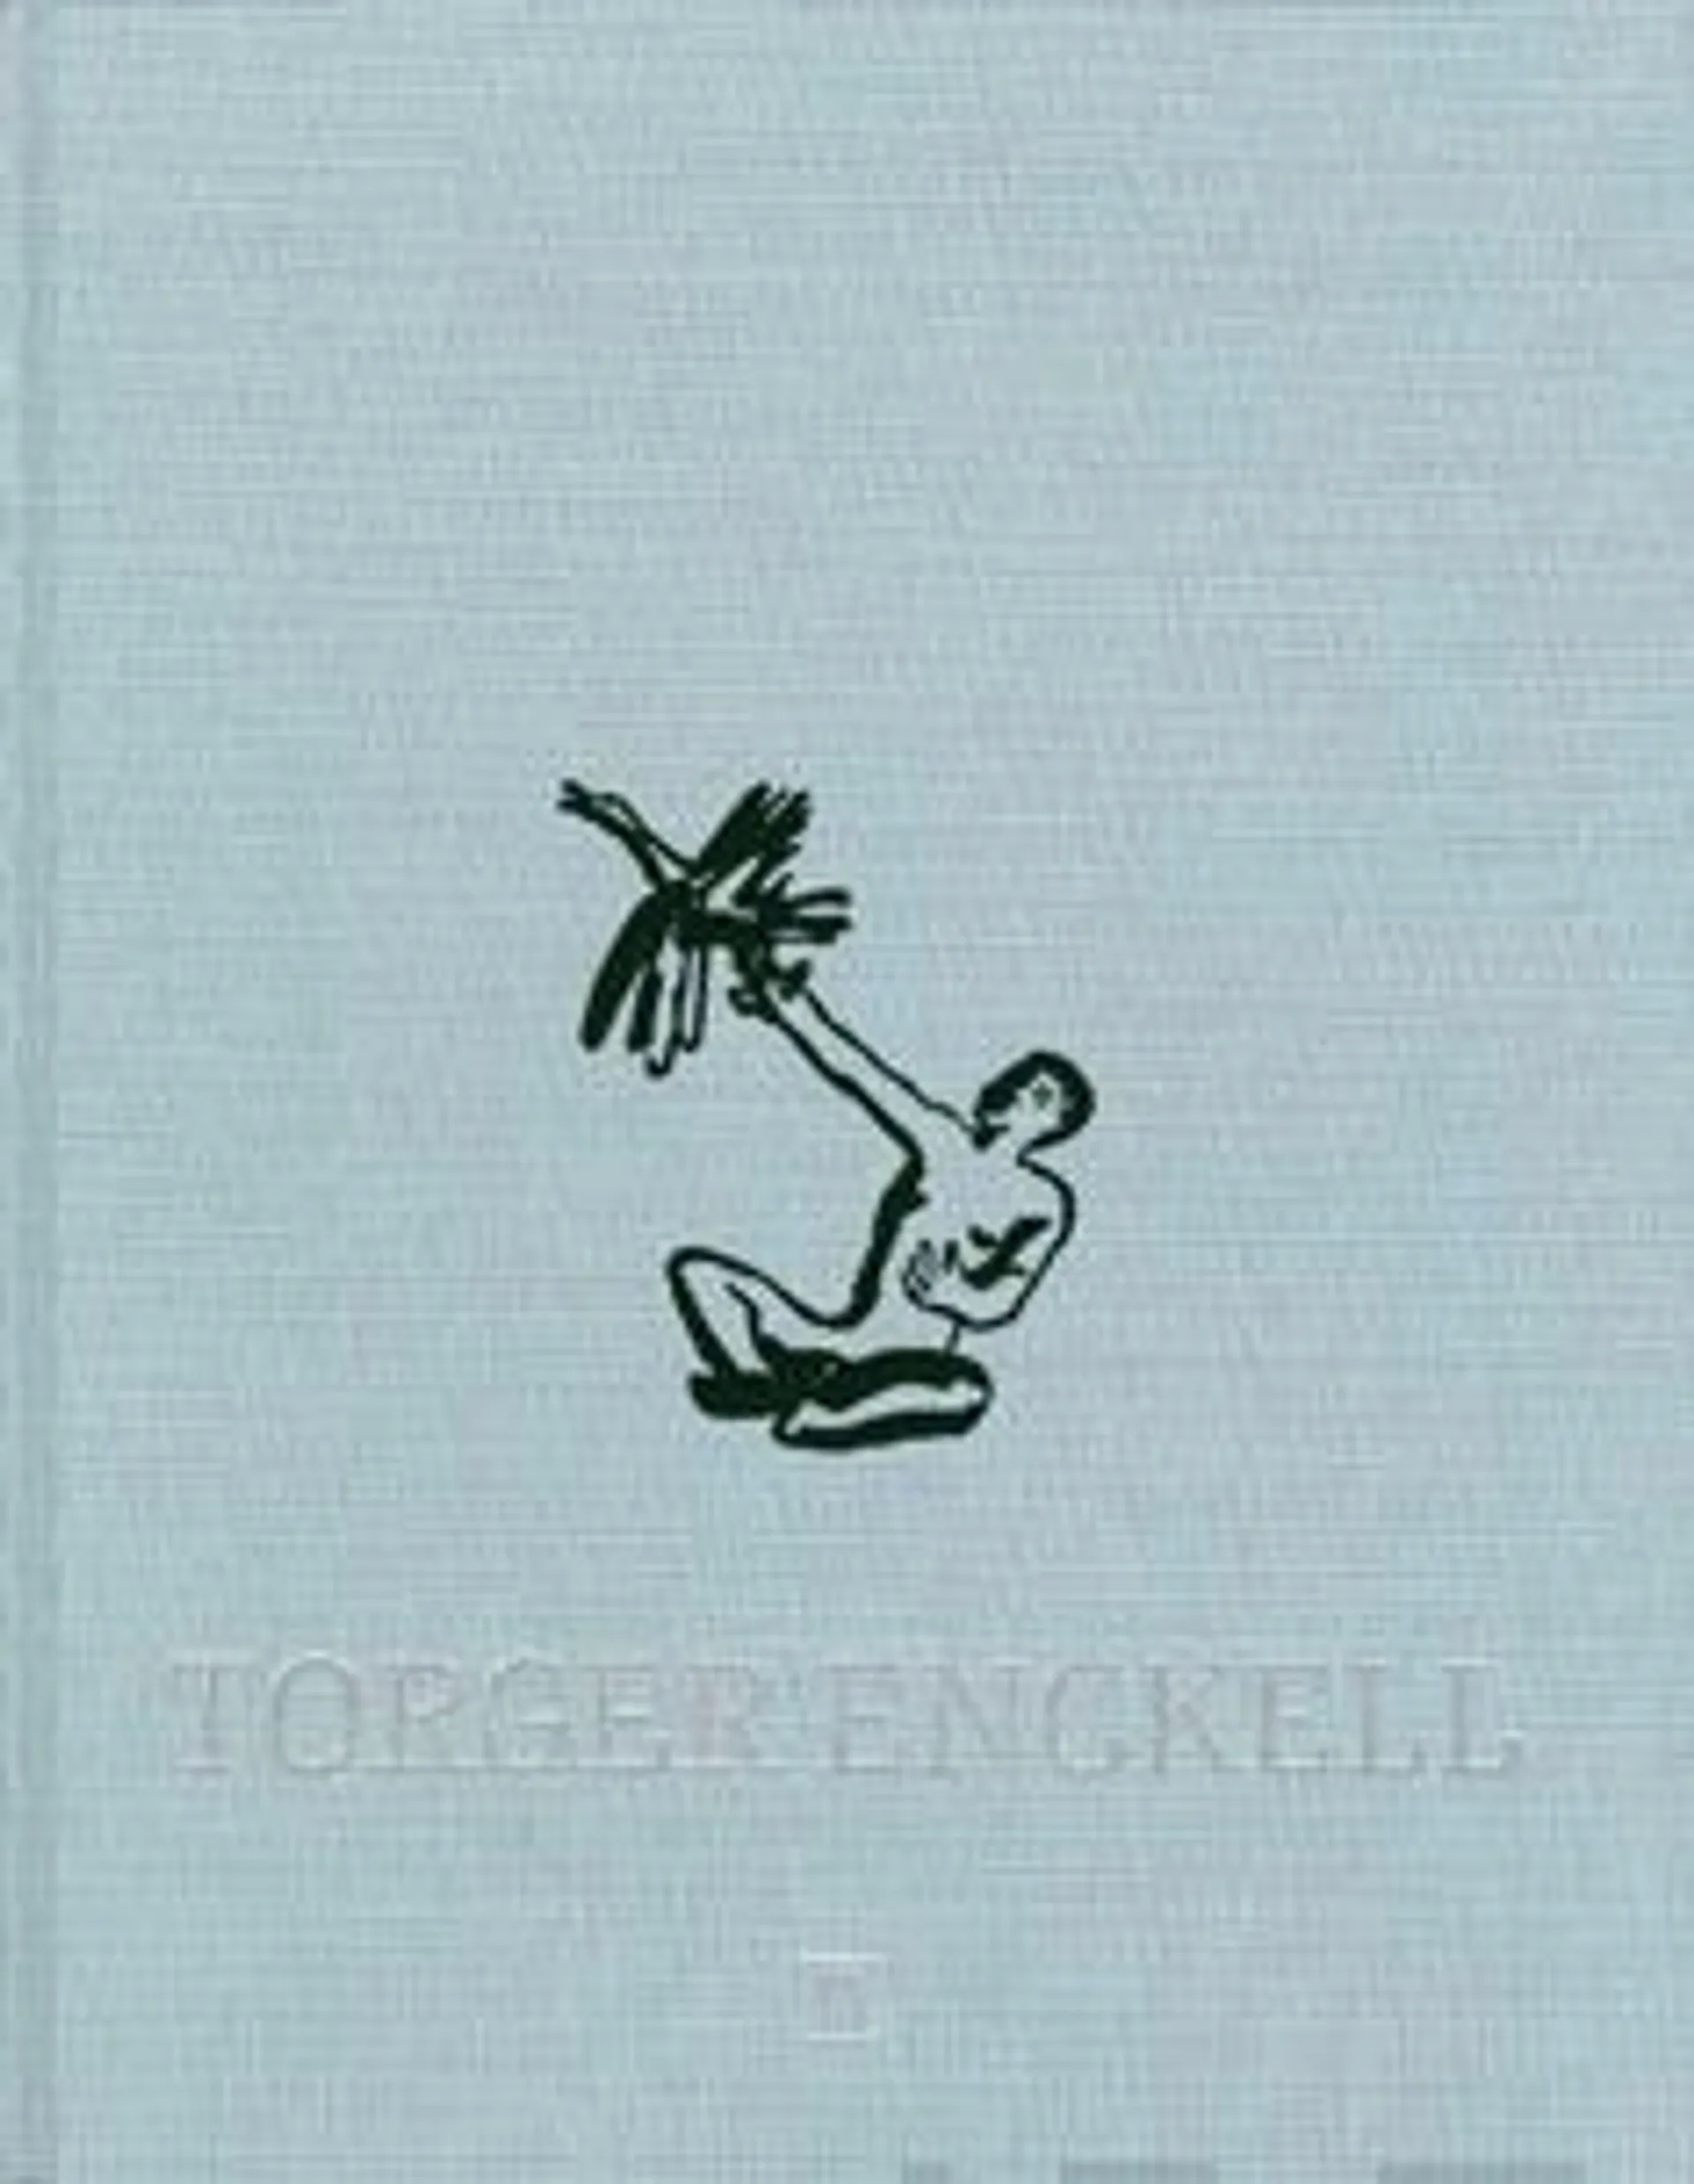 Torger Enckell